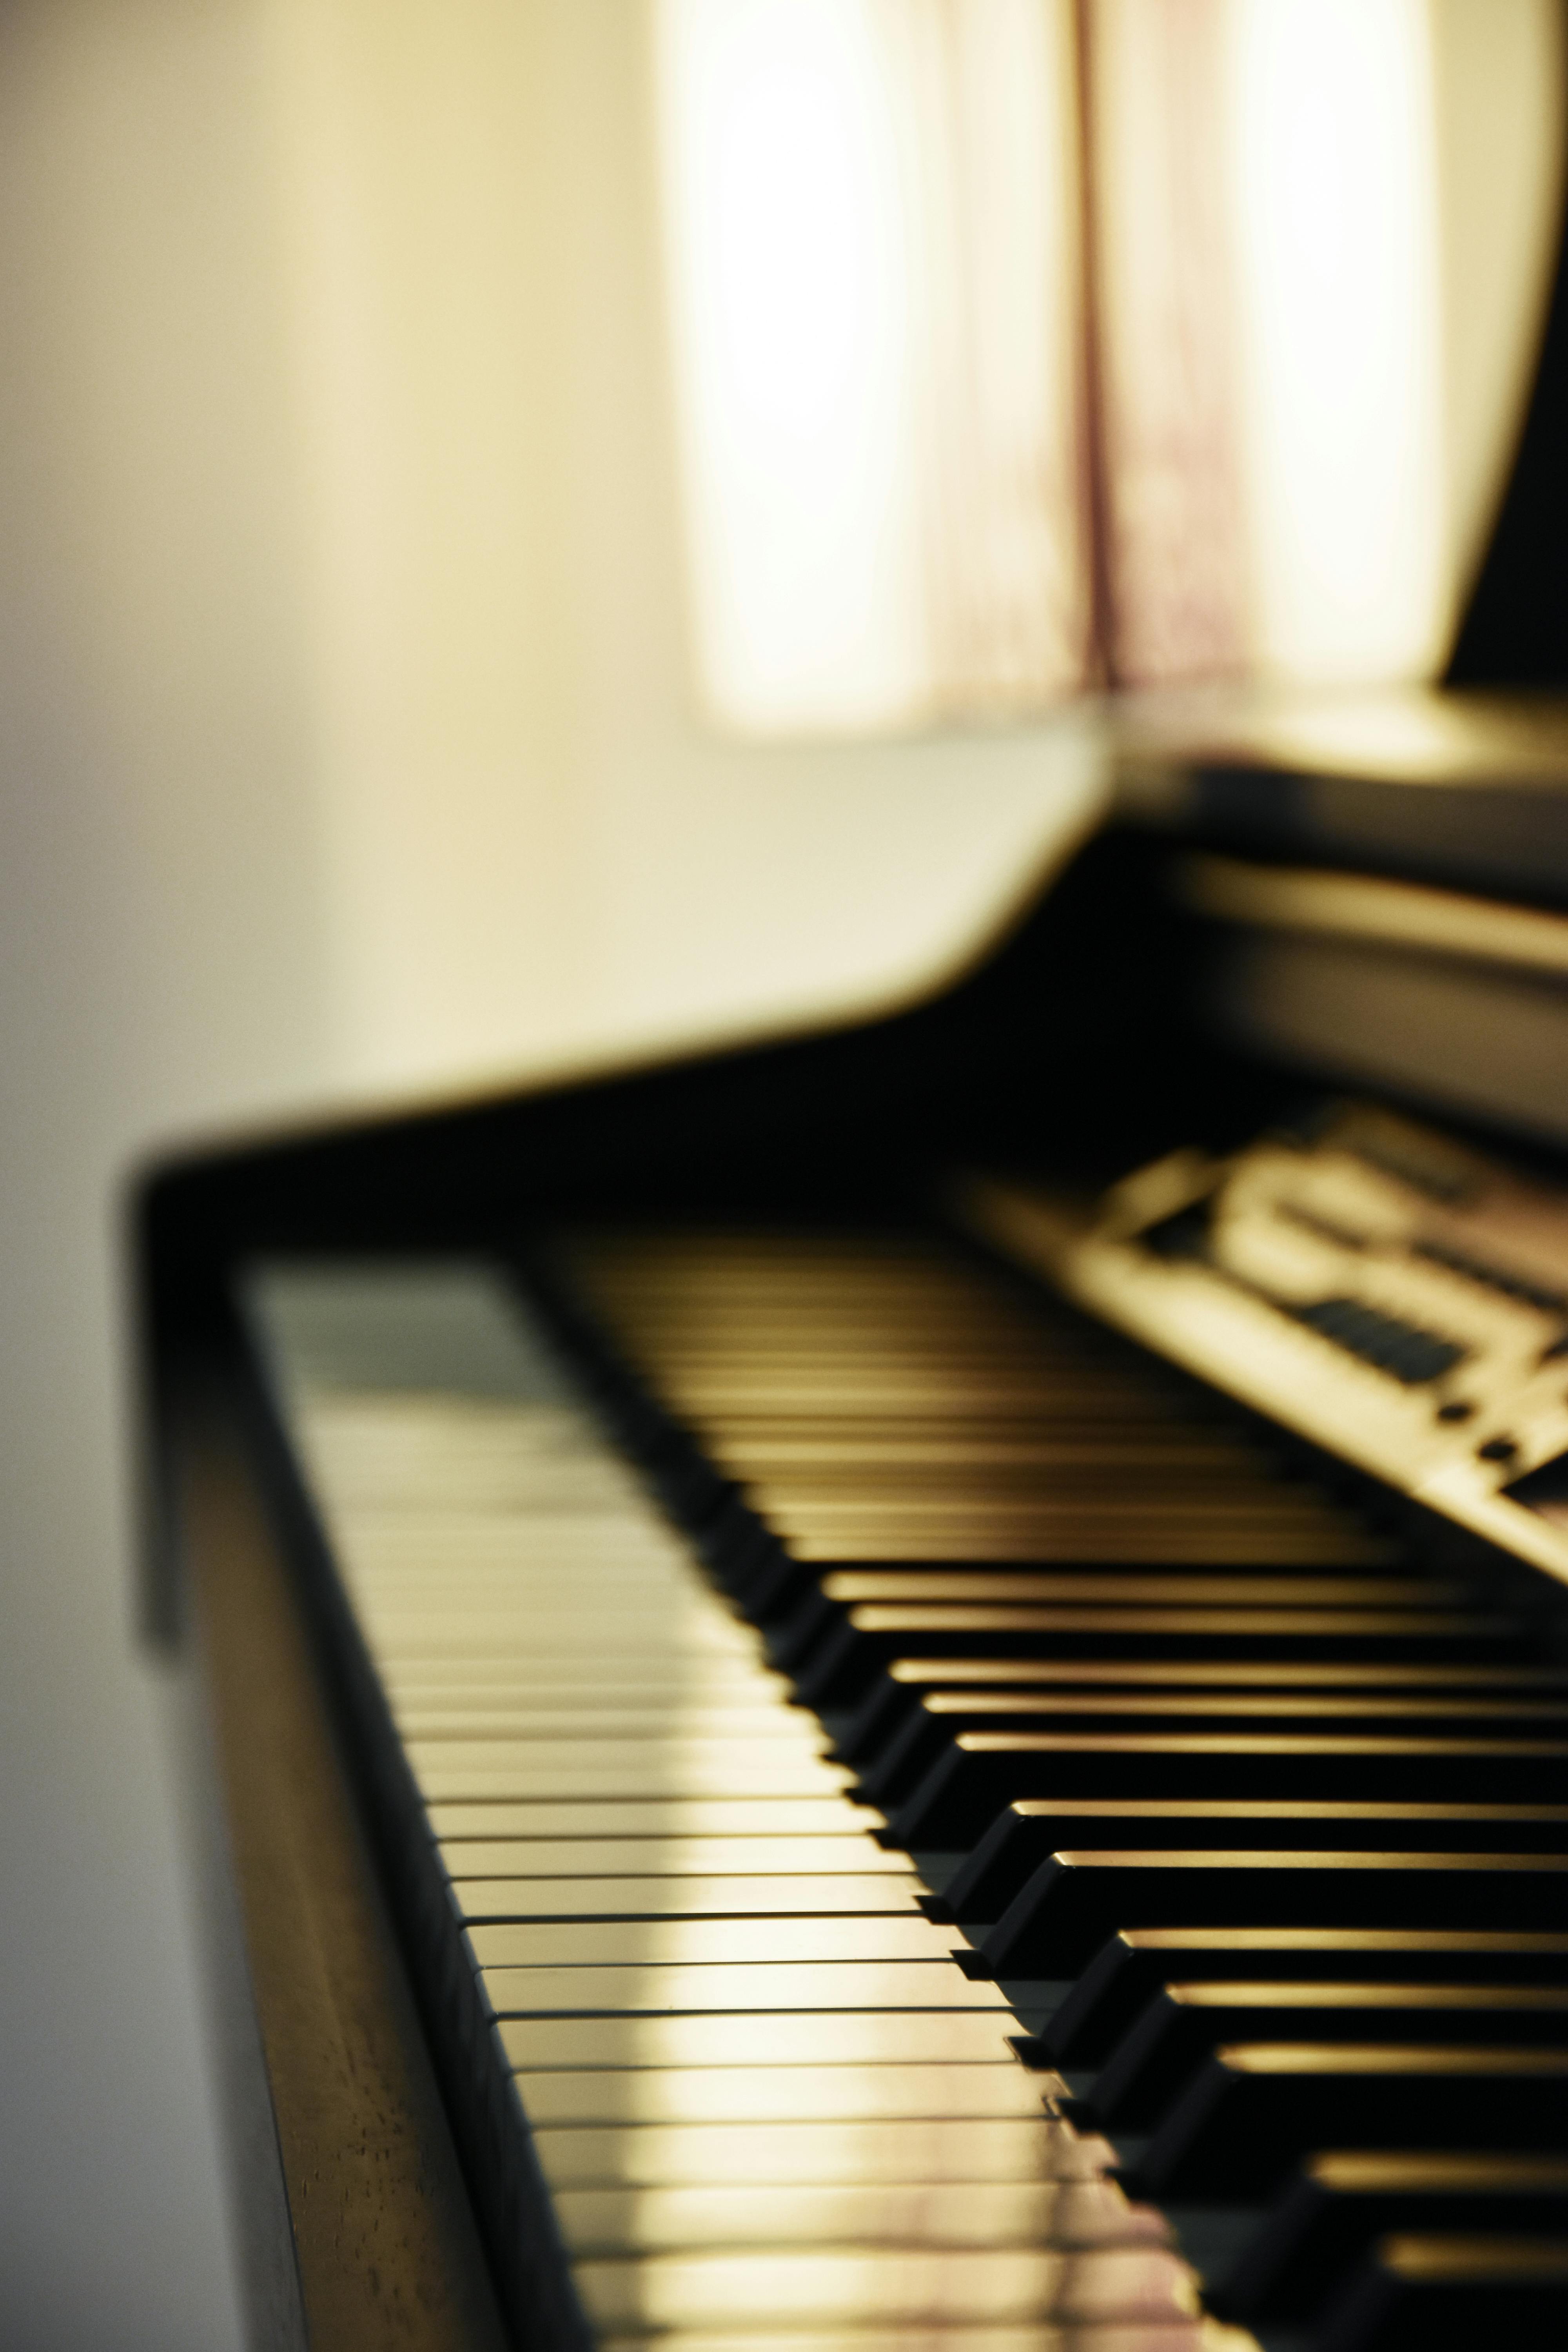 Hình Nền Sơ đồ Phím đàn Piano đen Trắng Tải Về Miễn Phí Hình ảnh piano  phím đen và trắng phím piano Sáng Tạo Từ Lovepik